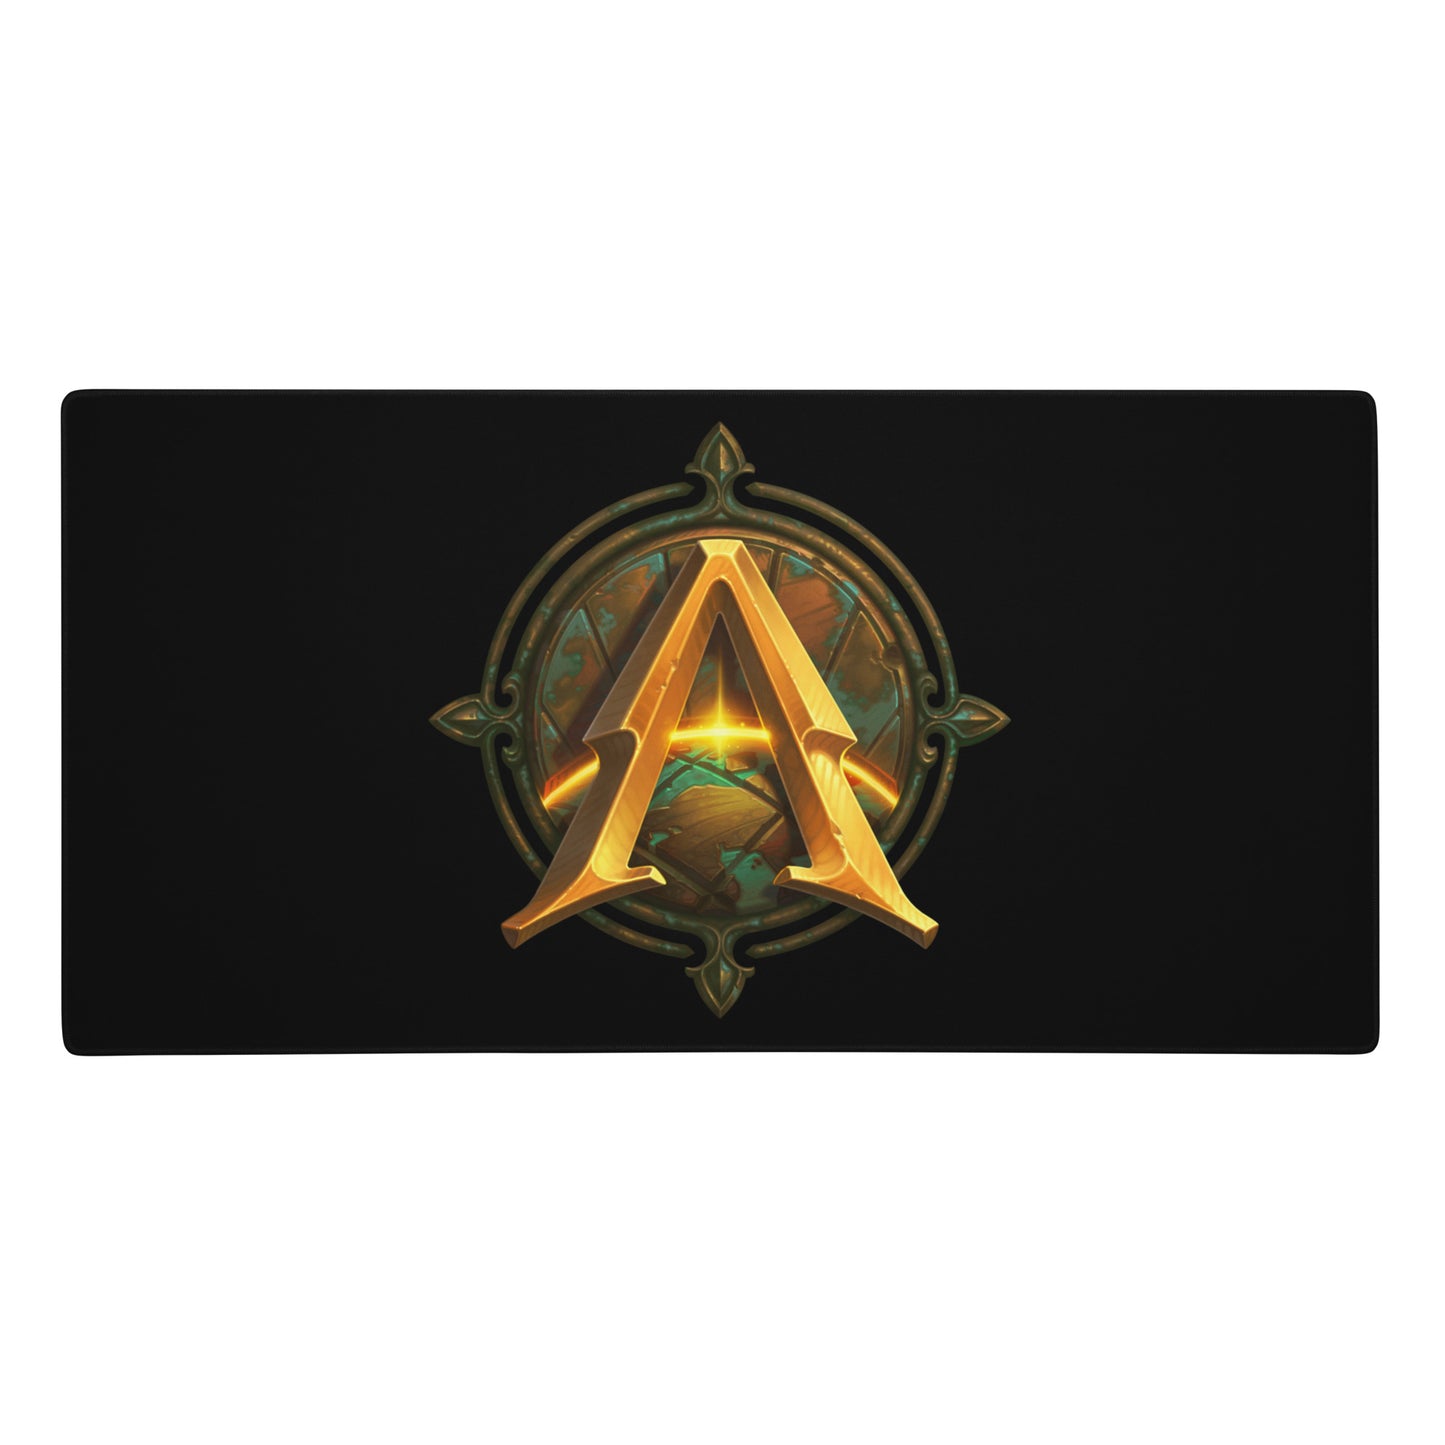 Avantris Logo - Gaming Mouse Pad